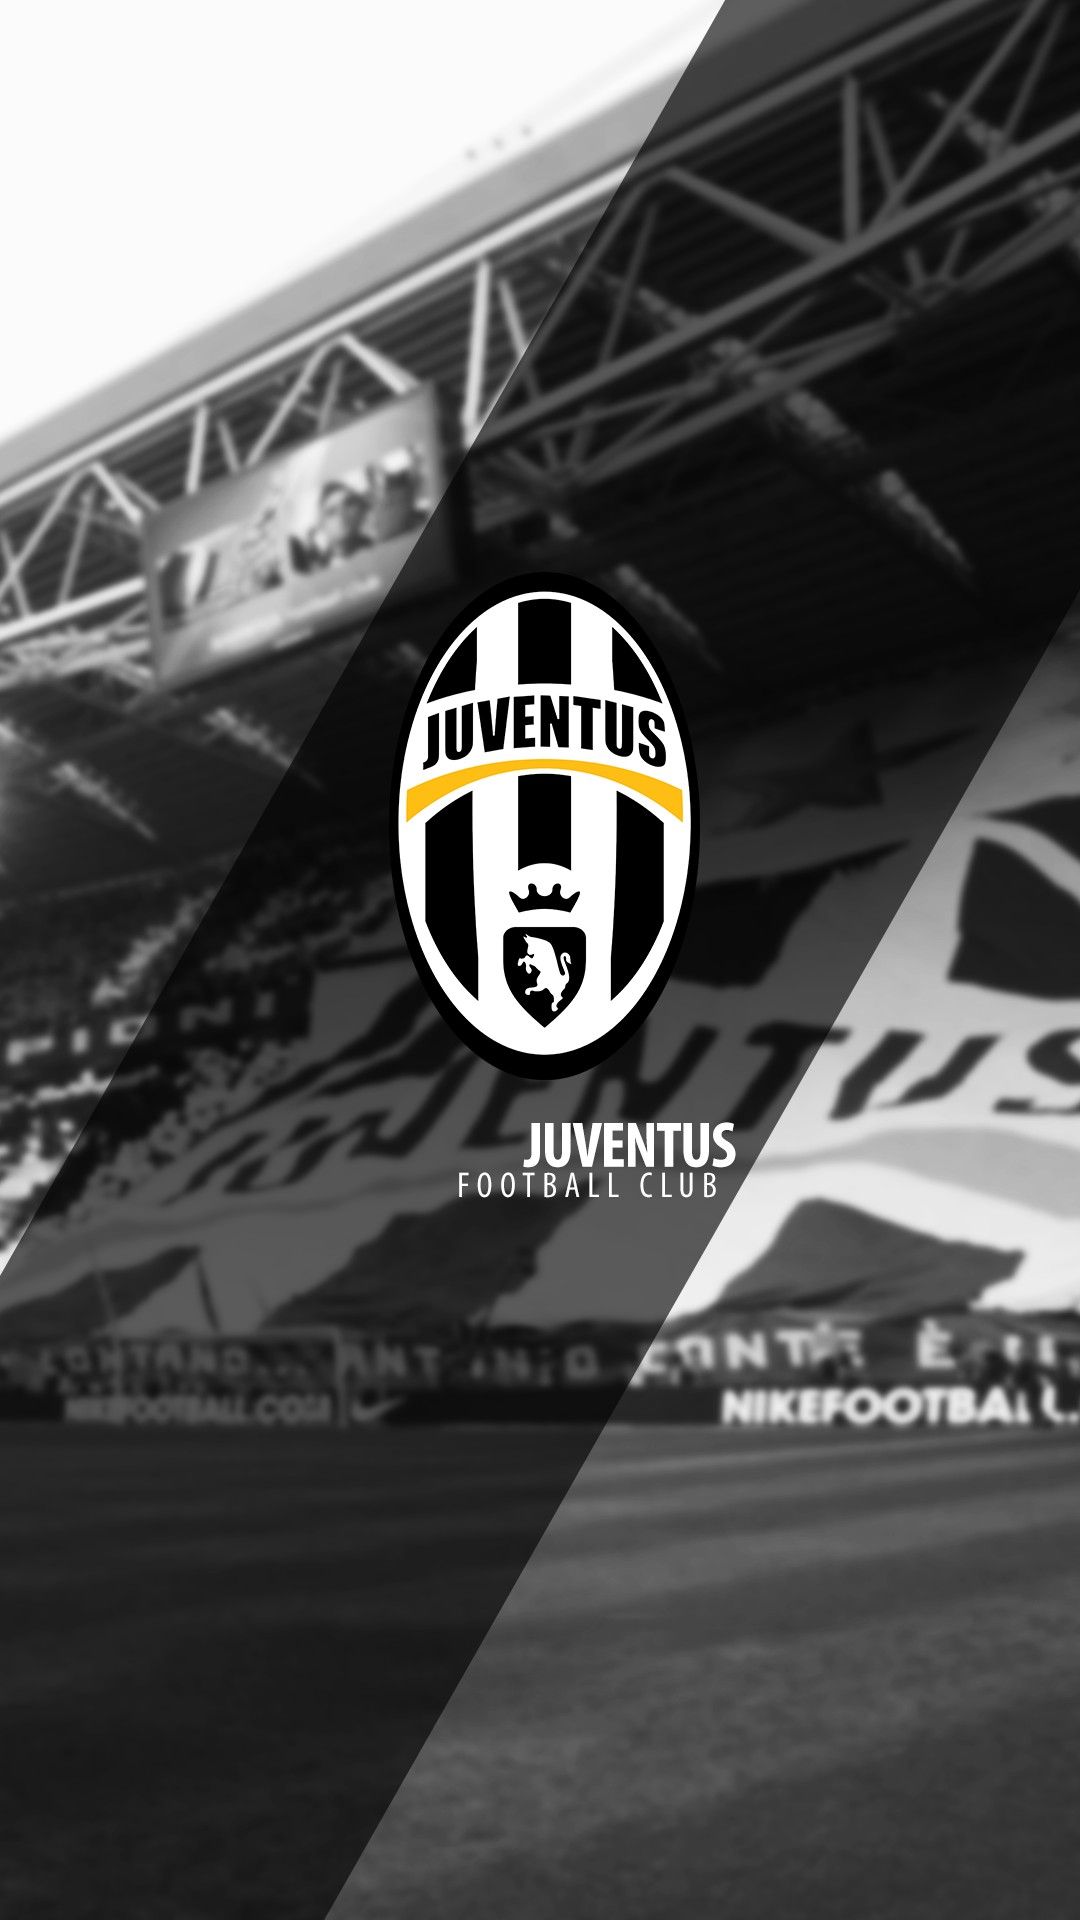 Juventus FC Mobile Wallpaper 3D .3Diphonewallpaper.com